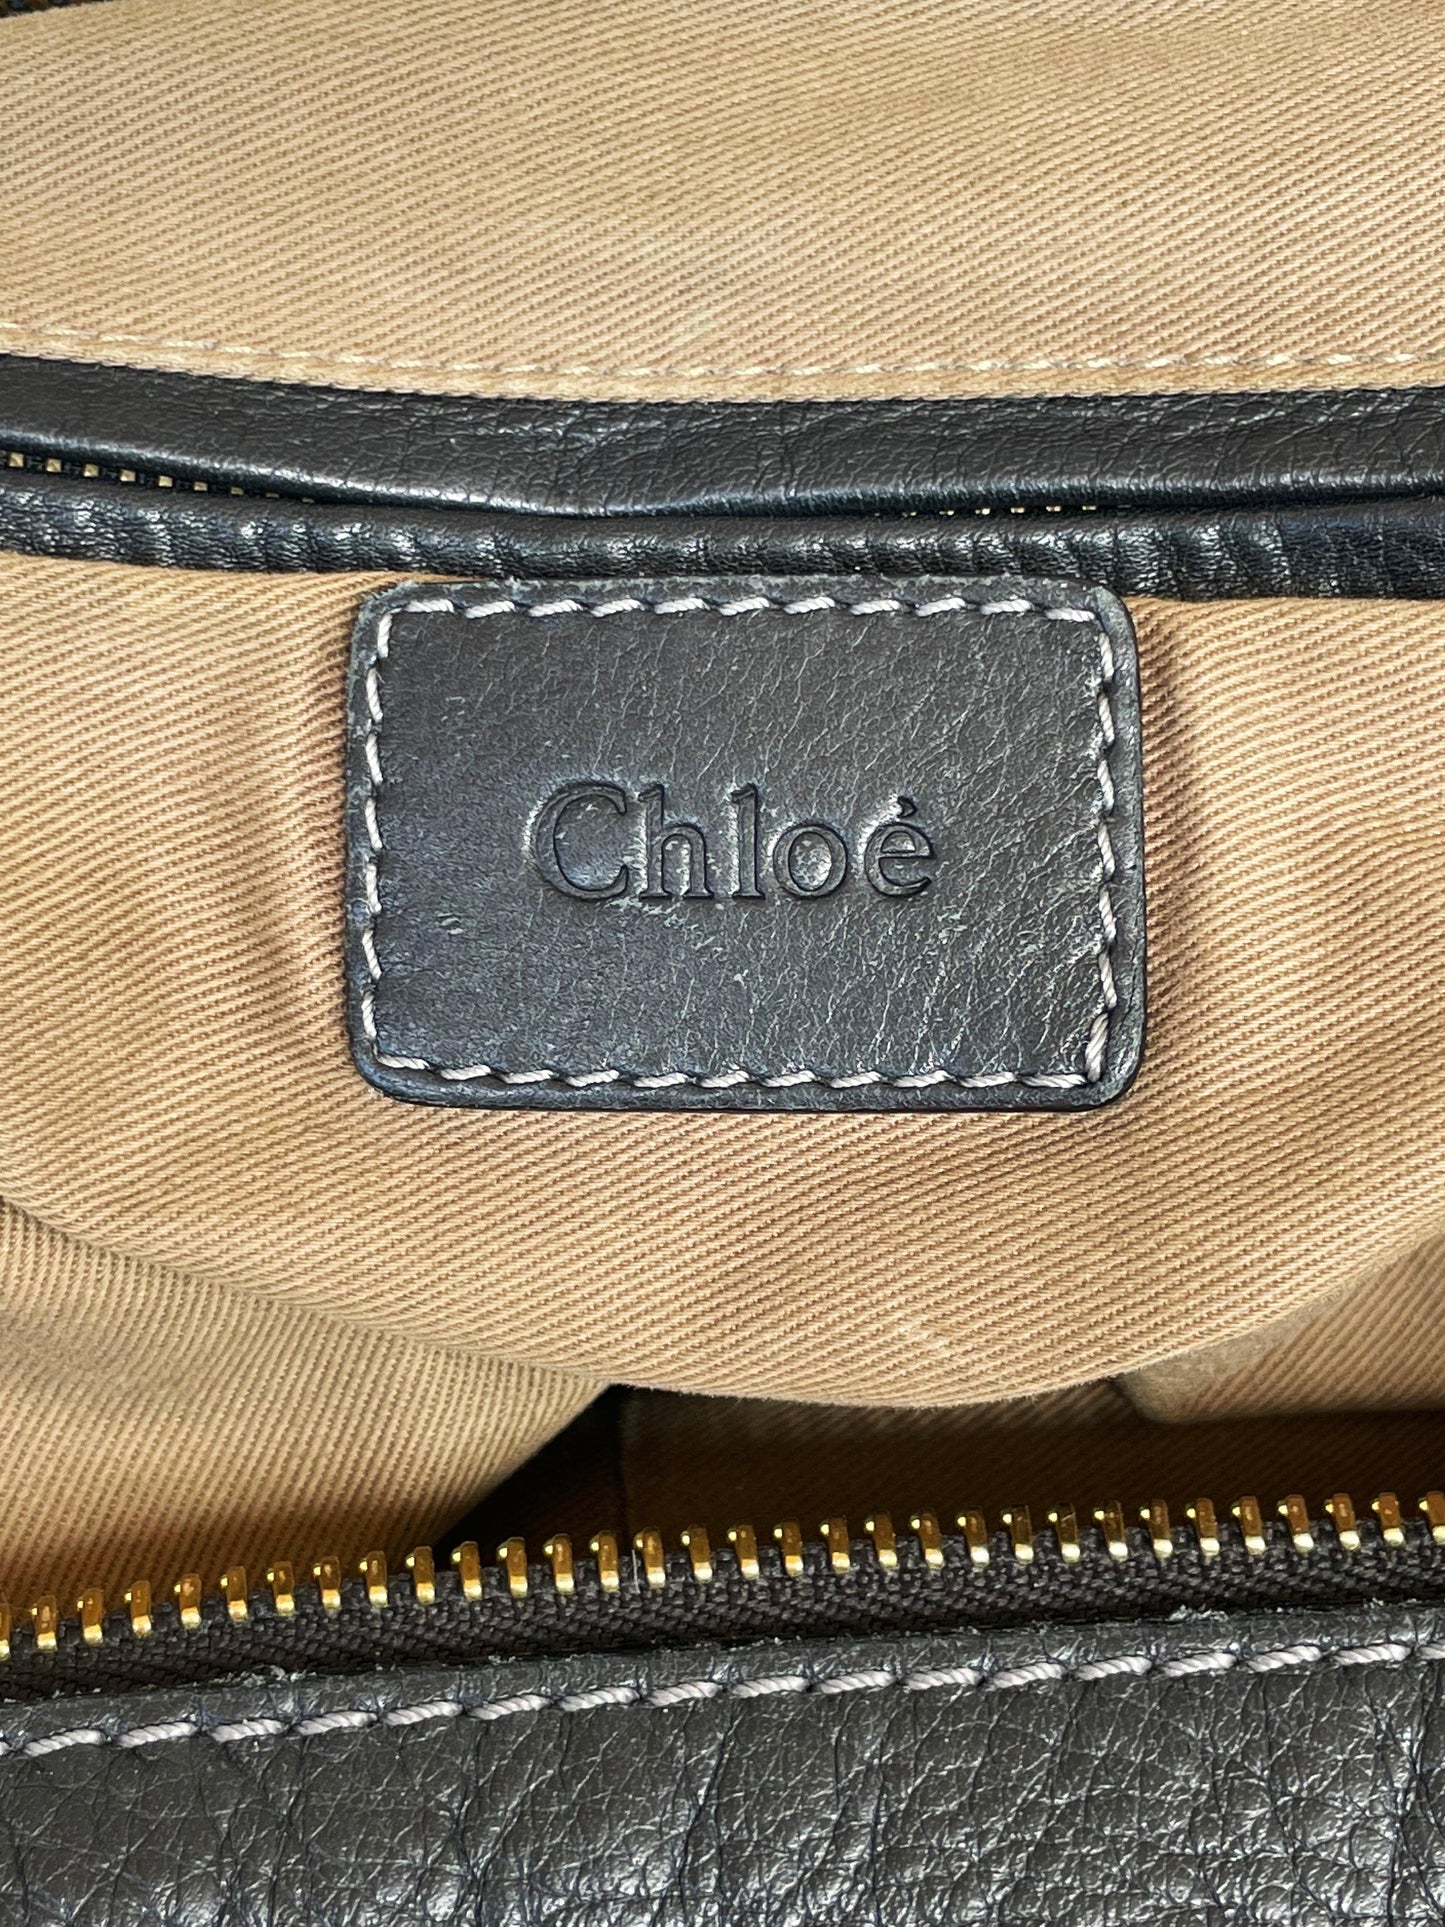 Chloe - Second Nature Boutique